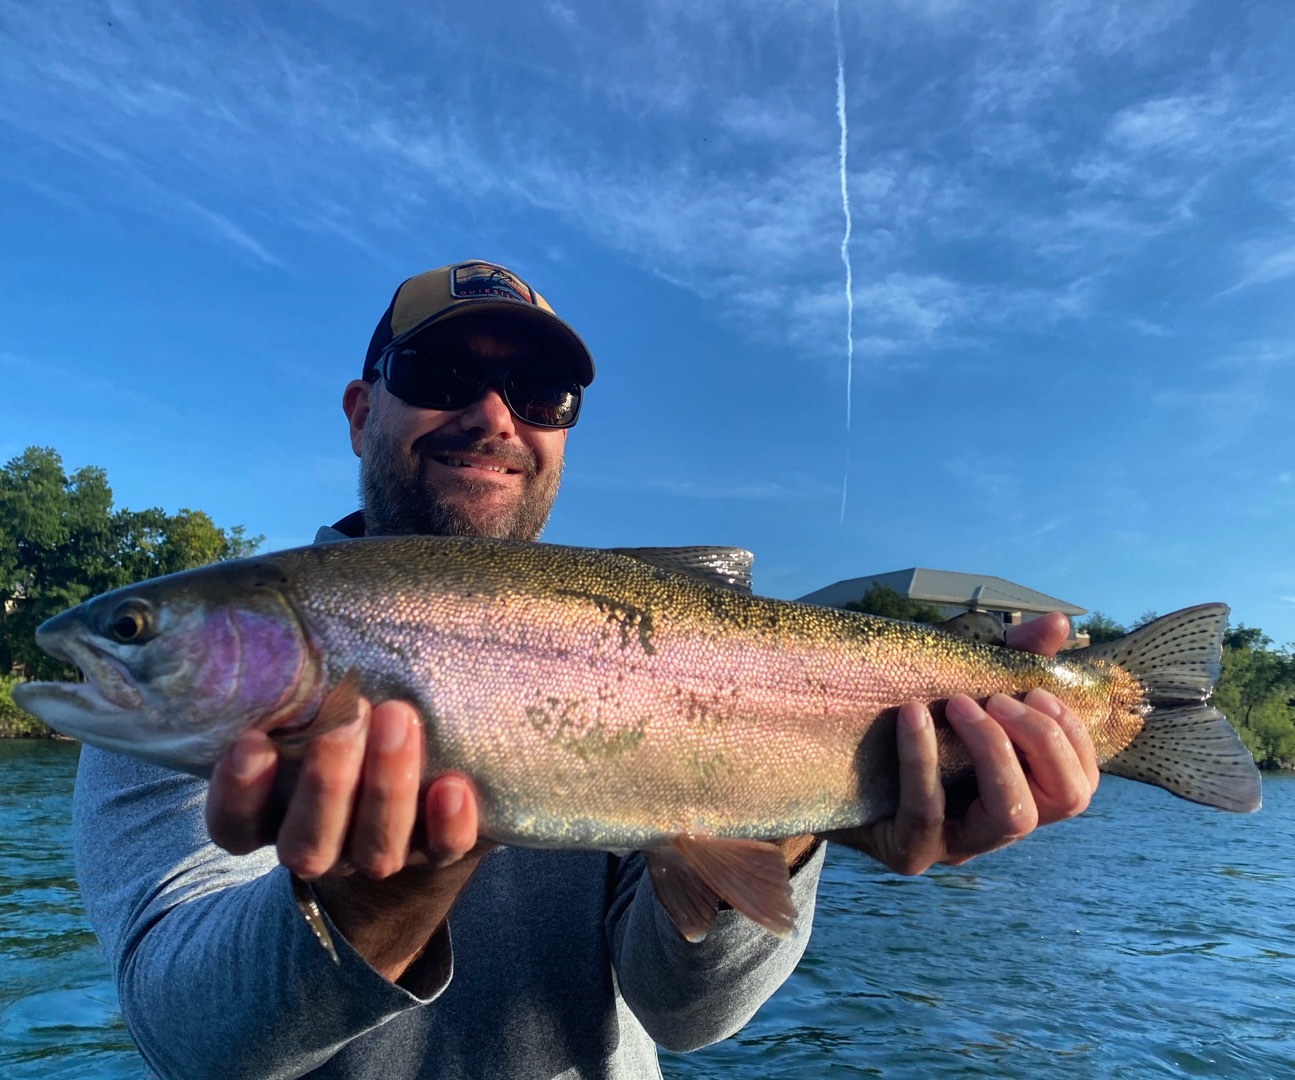 Wild rainbow trout action still hard to beat!